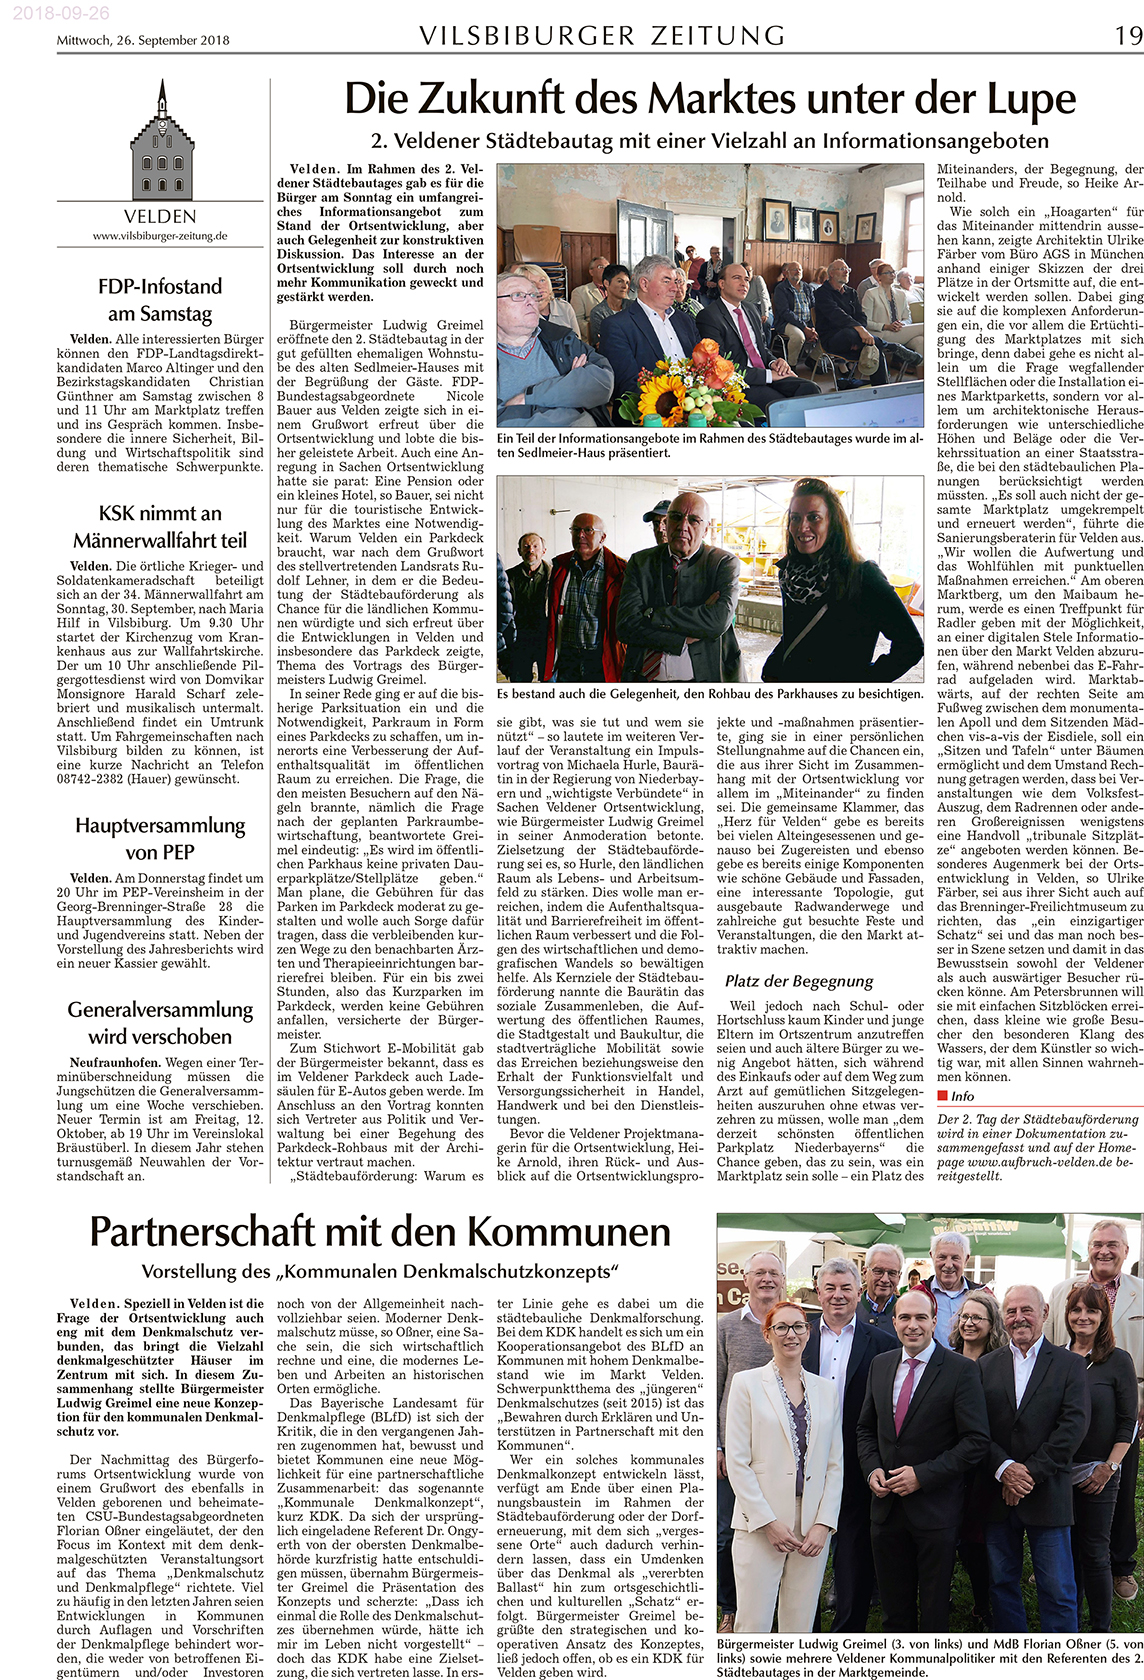 Bericht in der Vilsbiburger Zeitung vom 26.09.2018